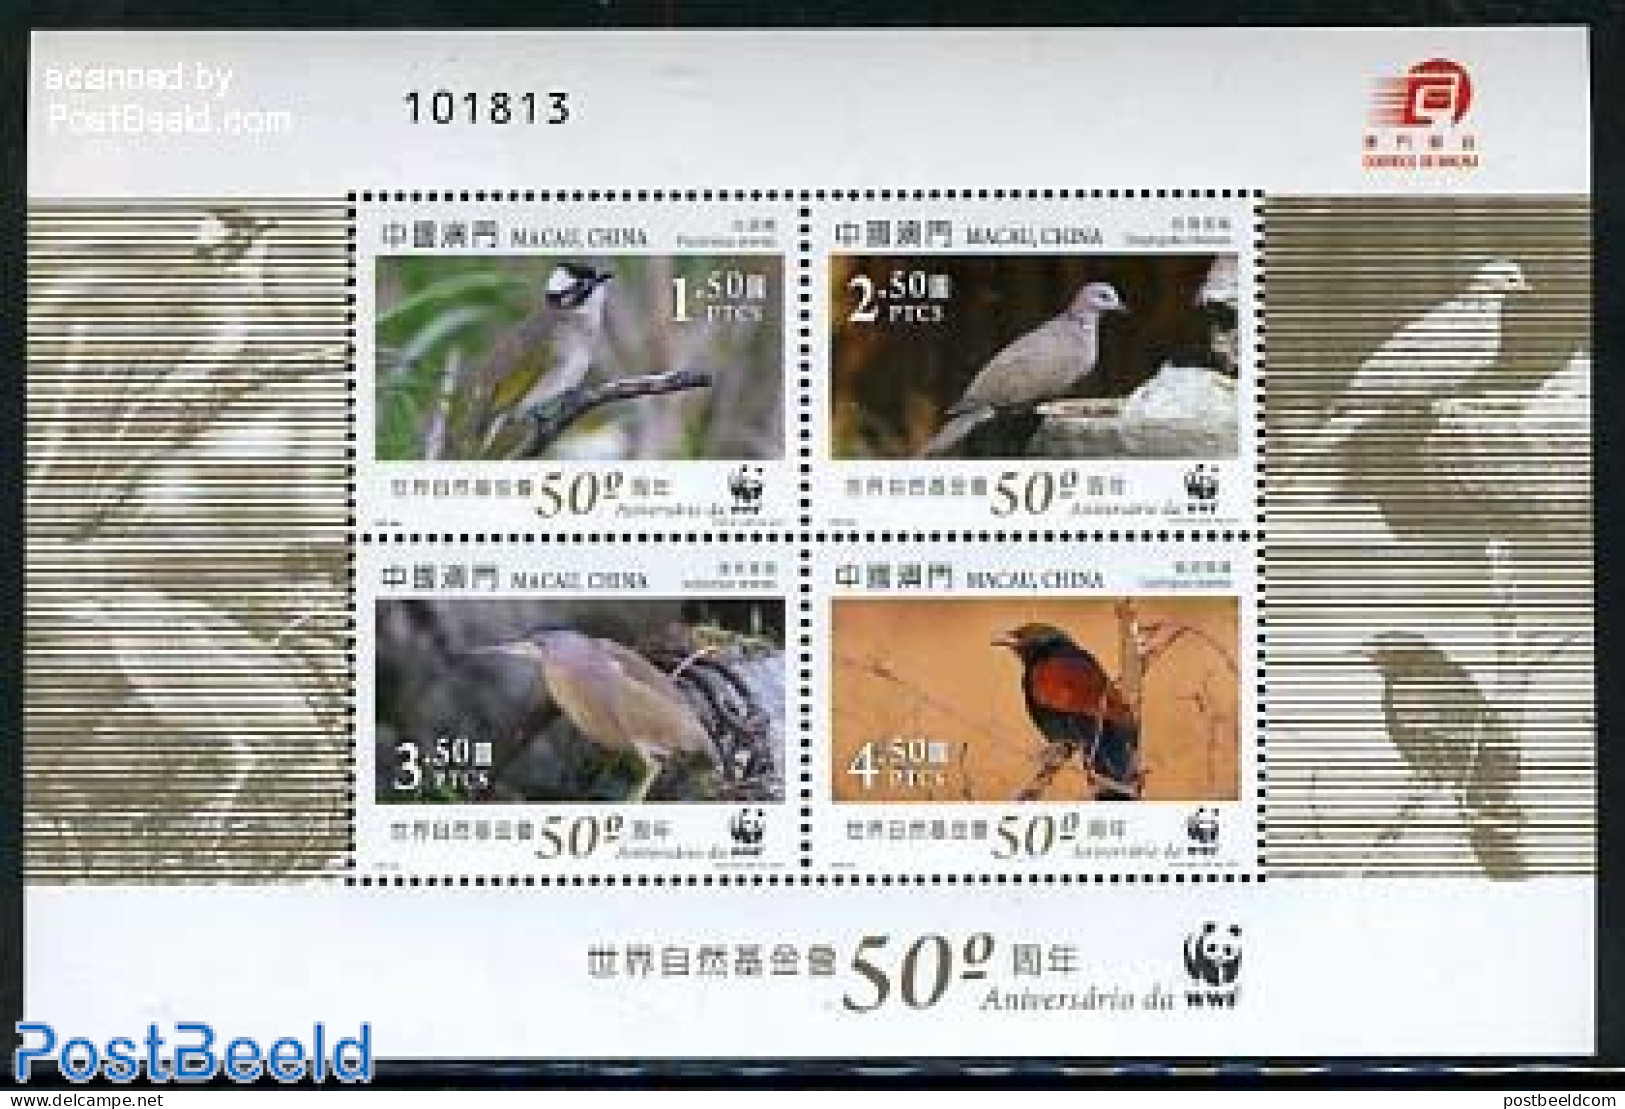 Macao 2011 WWF, Birds S/s, Mint NH, Nature - Birds - World Wildlife Fund (WWF) - Ungebraucht